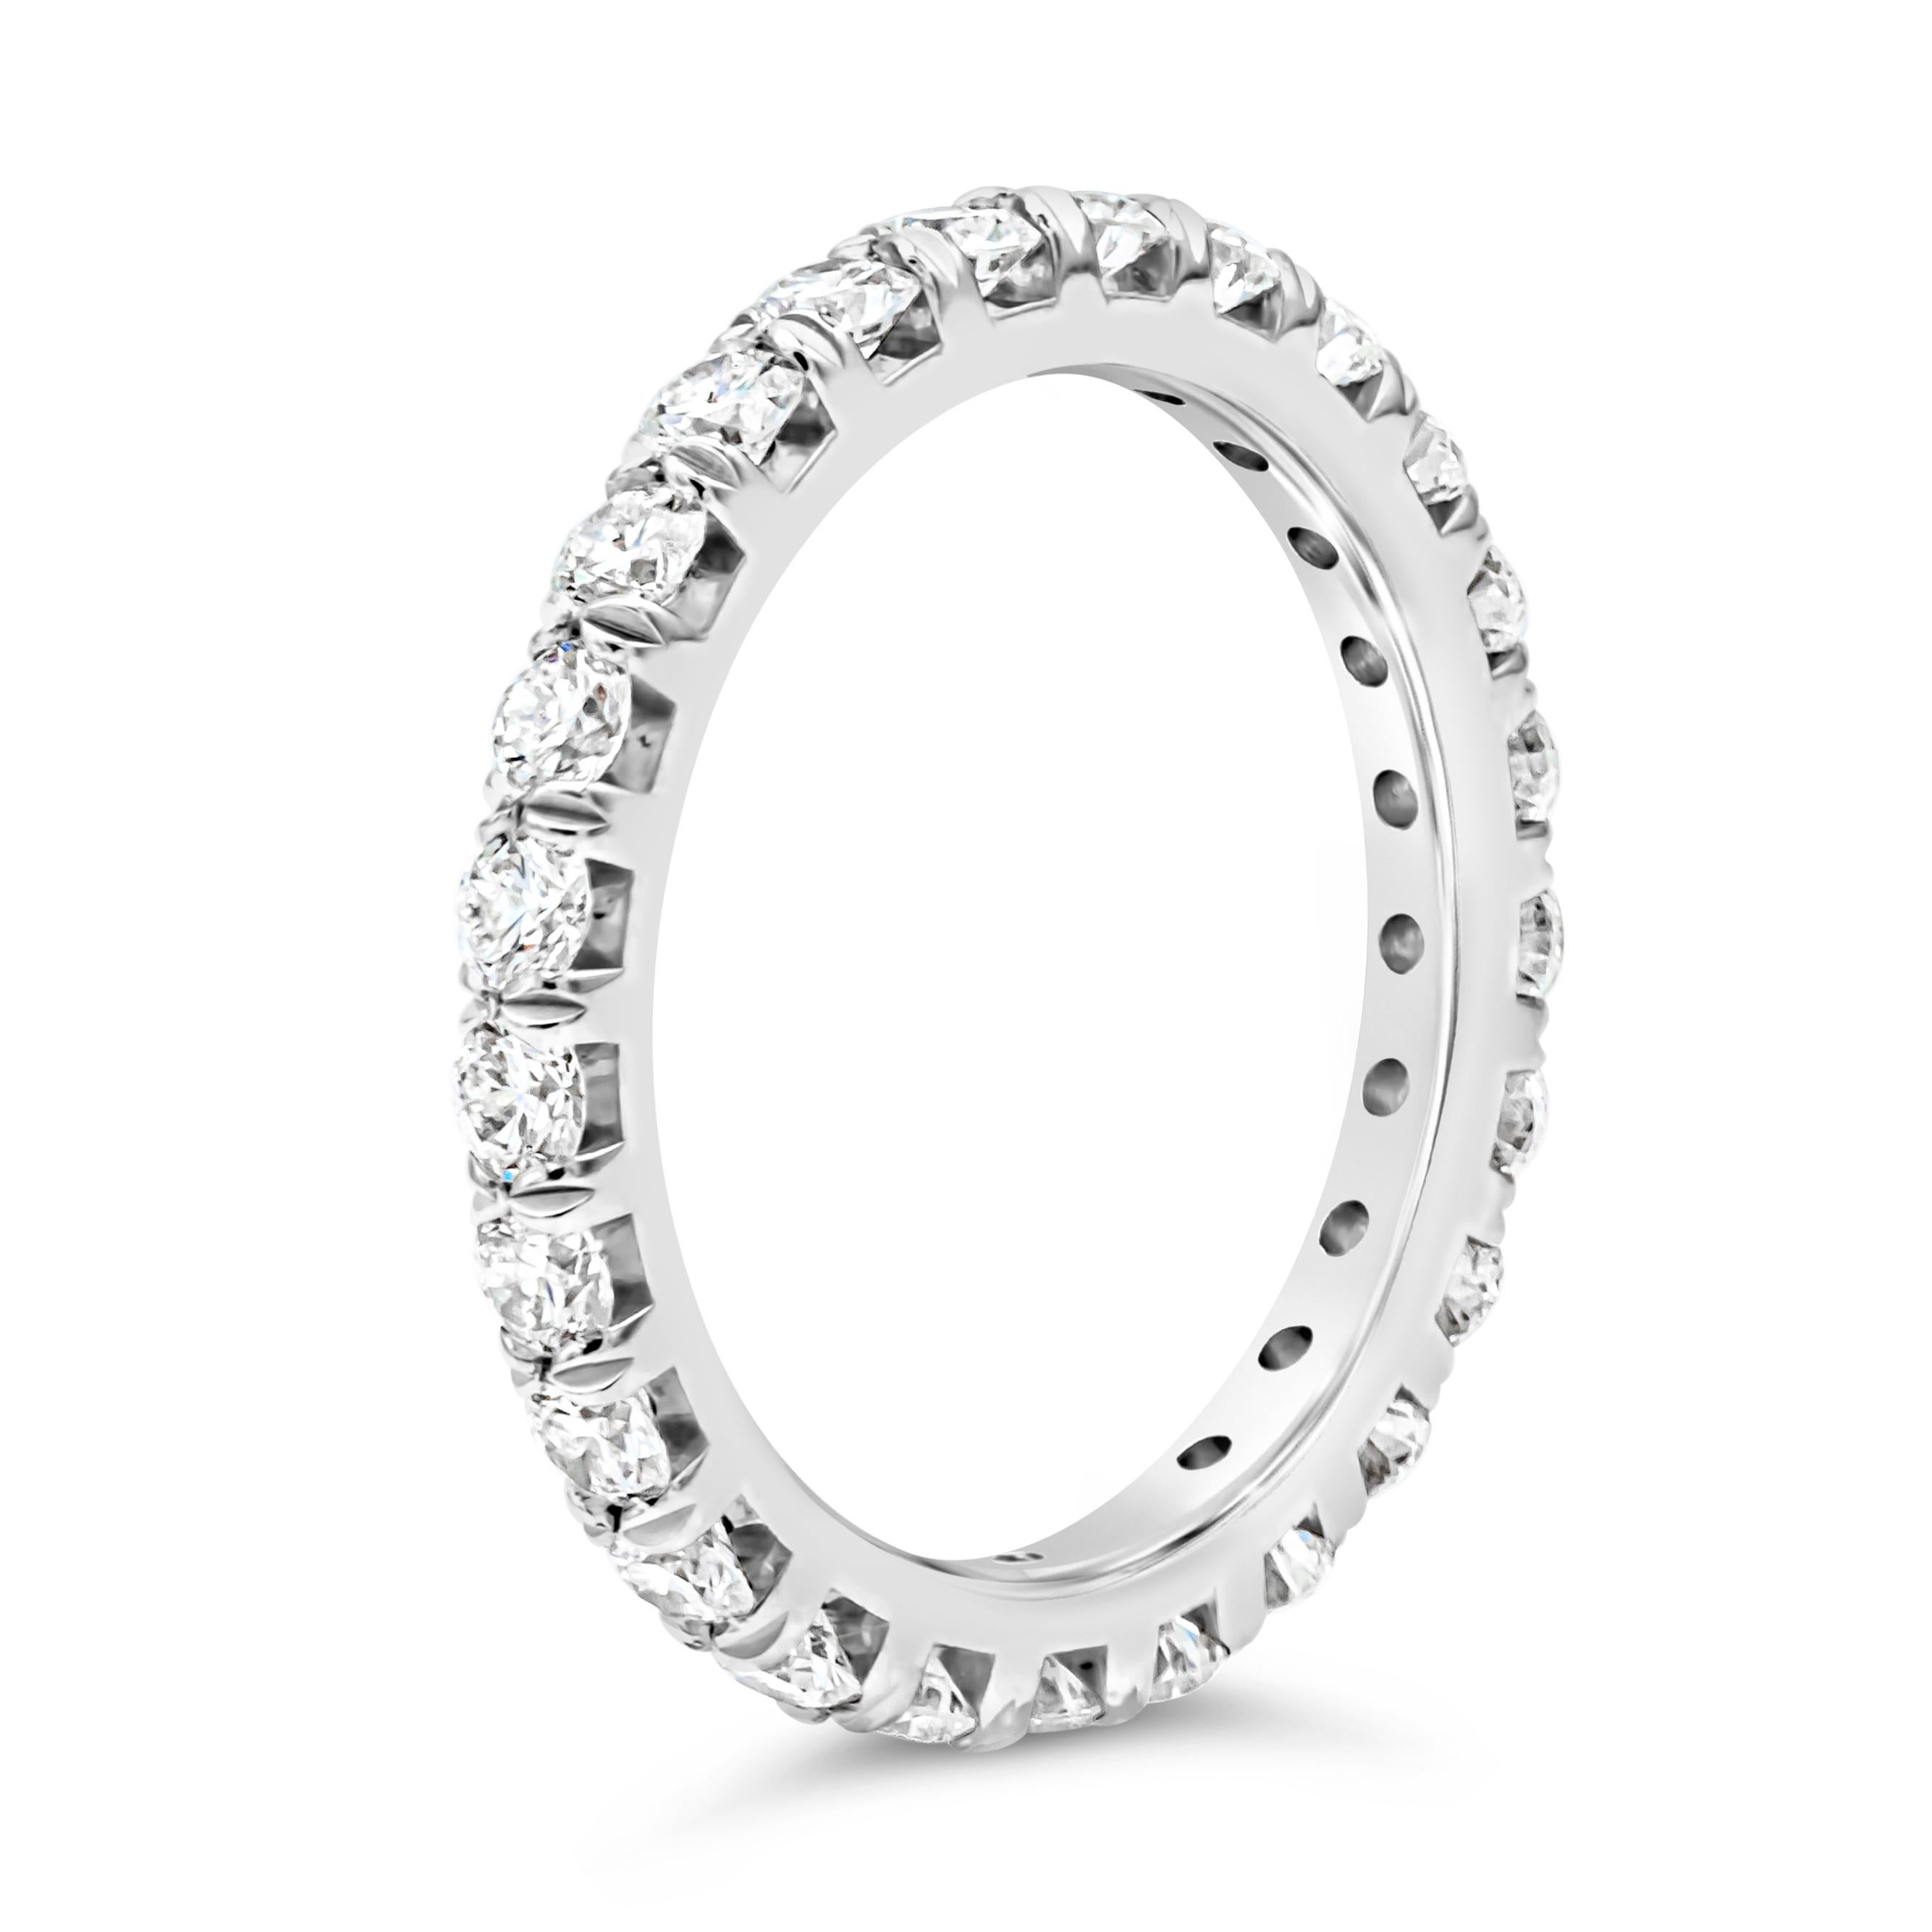 Ein klassischer Ehering für die Ewigkeit mit einer Reihe von 25 runden Diamanten im Brillantschliff mit einem Gesamtgewicht von 1,45 Karat, Farbe G und Reinheit VS, gefasst in einer französischen Pavé-Fassung mit vier Zacken, die fein aus Platin